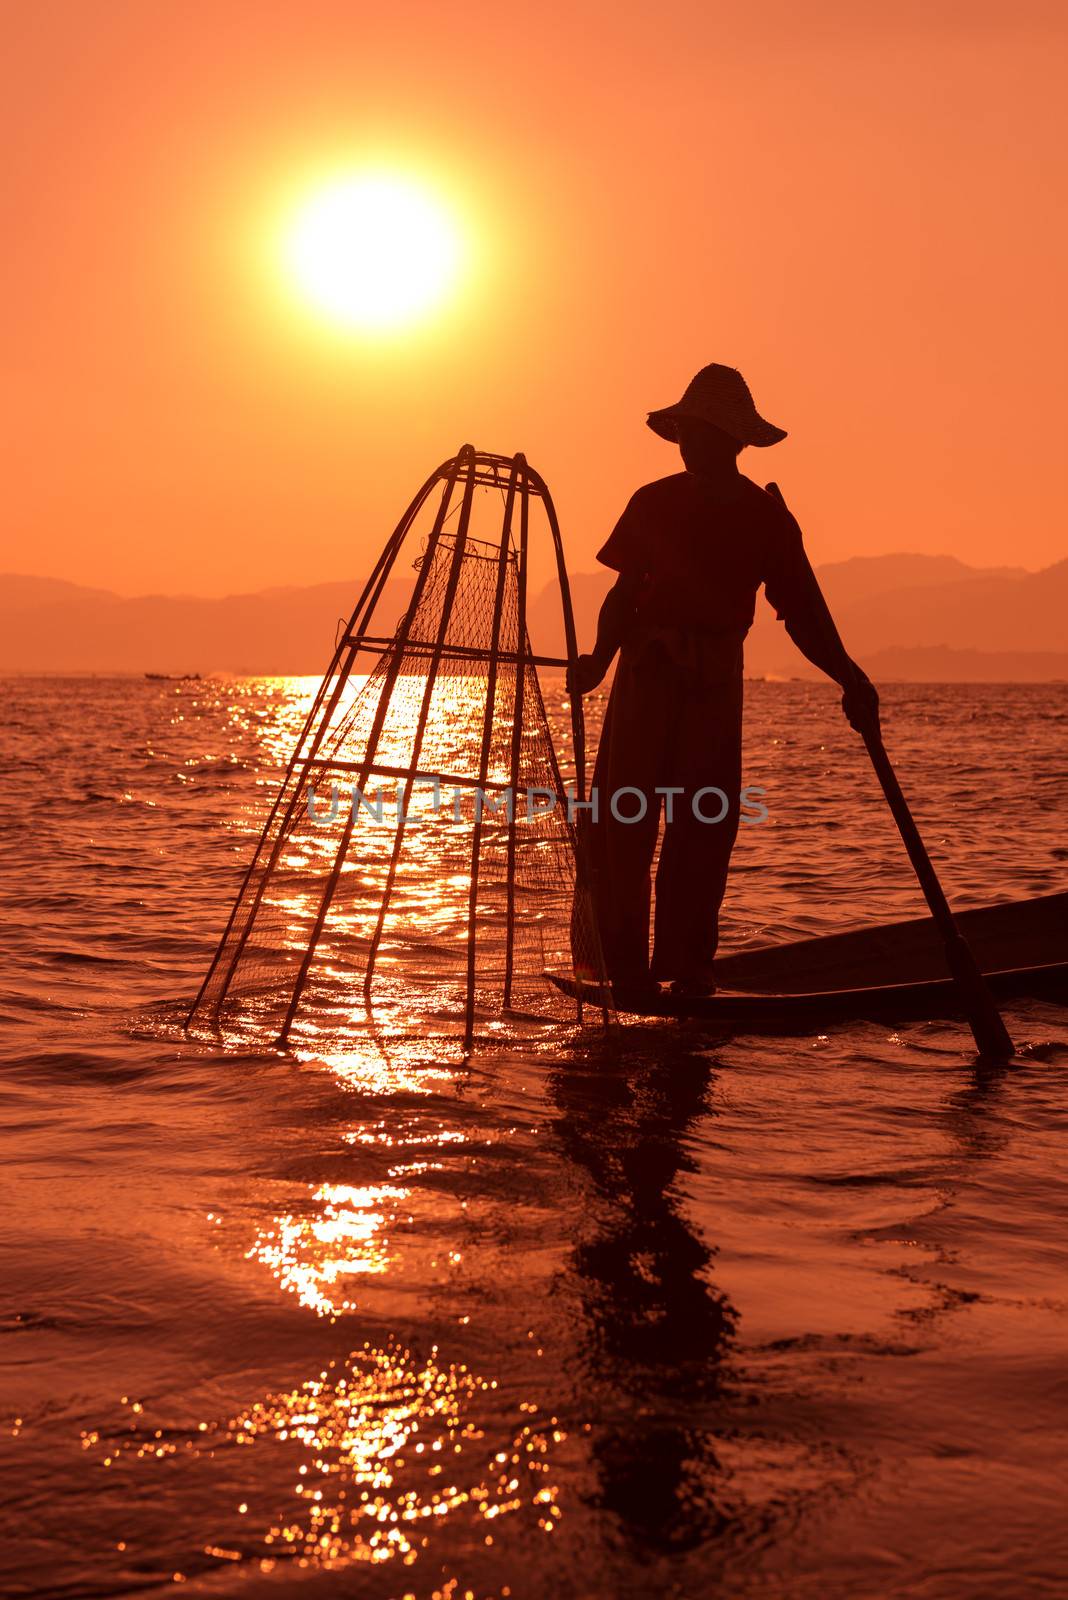 Traditional fishing by net in Burma by iryna_rasko